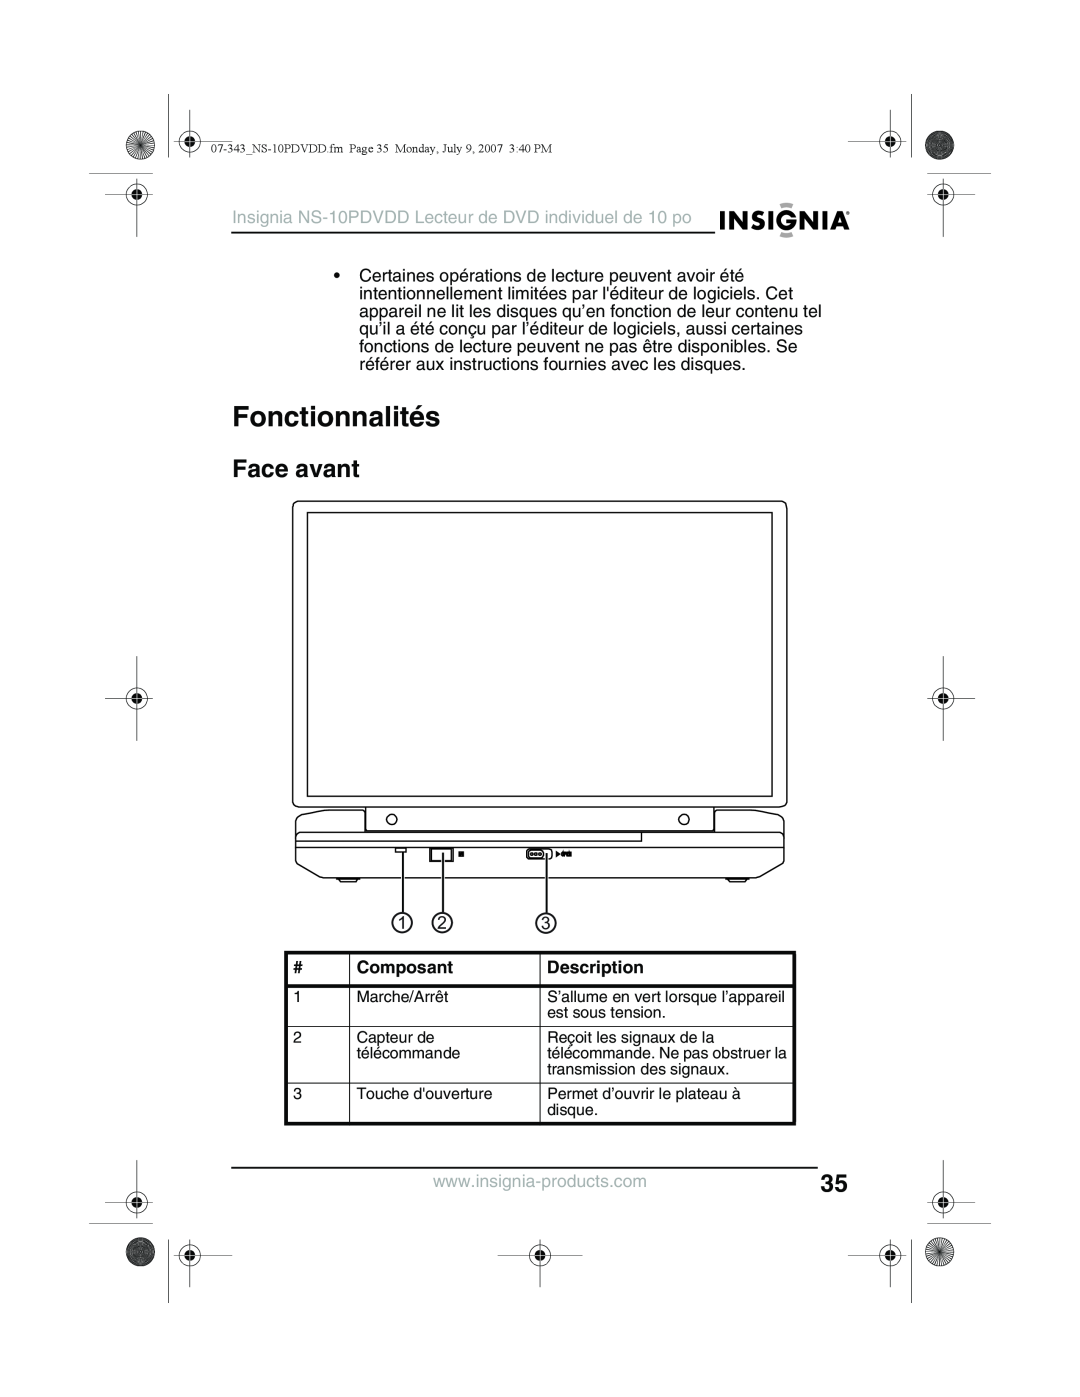 Insignia Fonctionnalités, Face avant, Composant, Insignia NS-10PDVDD Lecteur de DVD individuel de 10 po, Description 